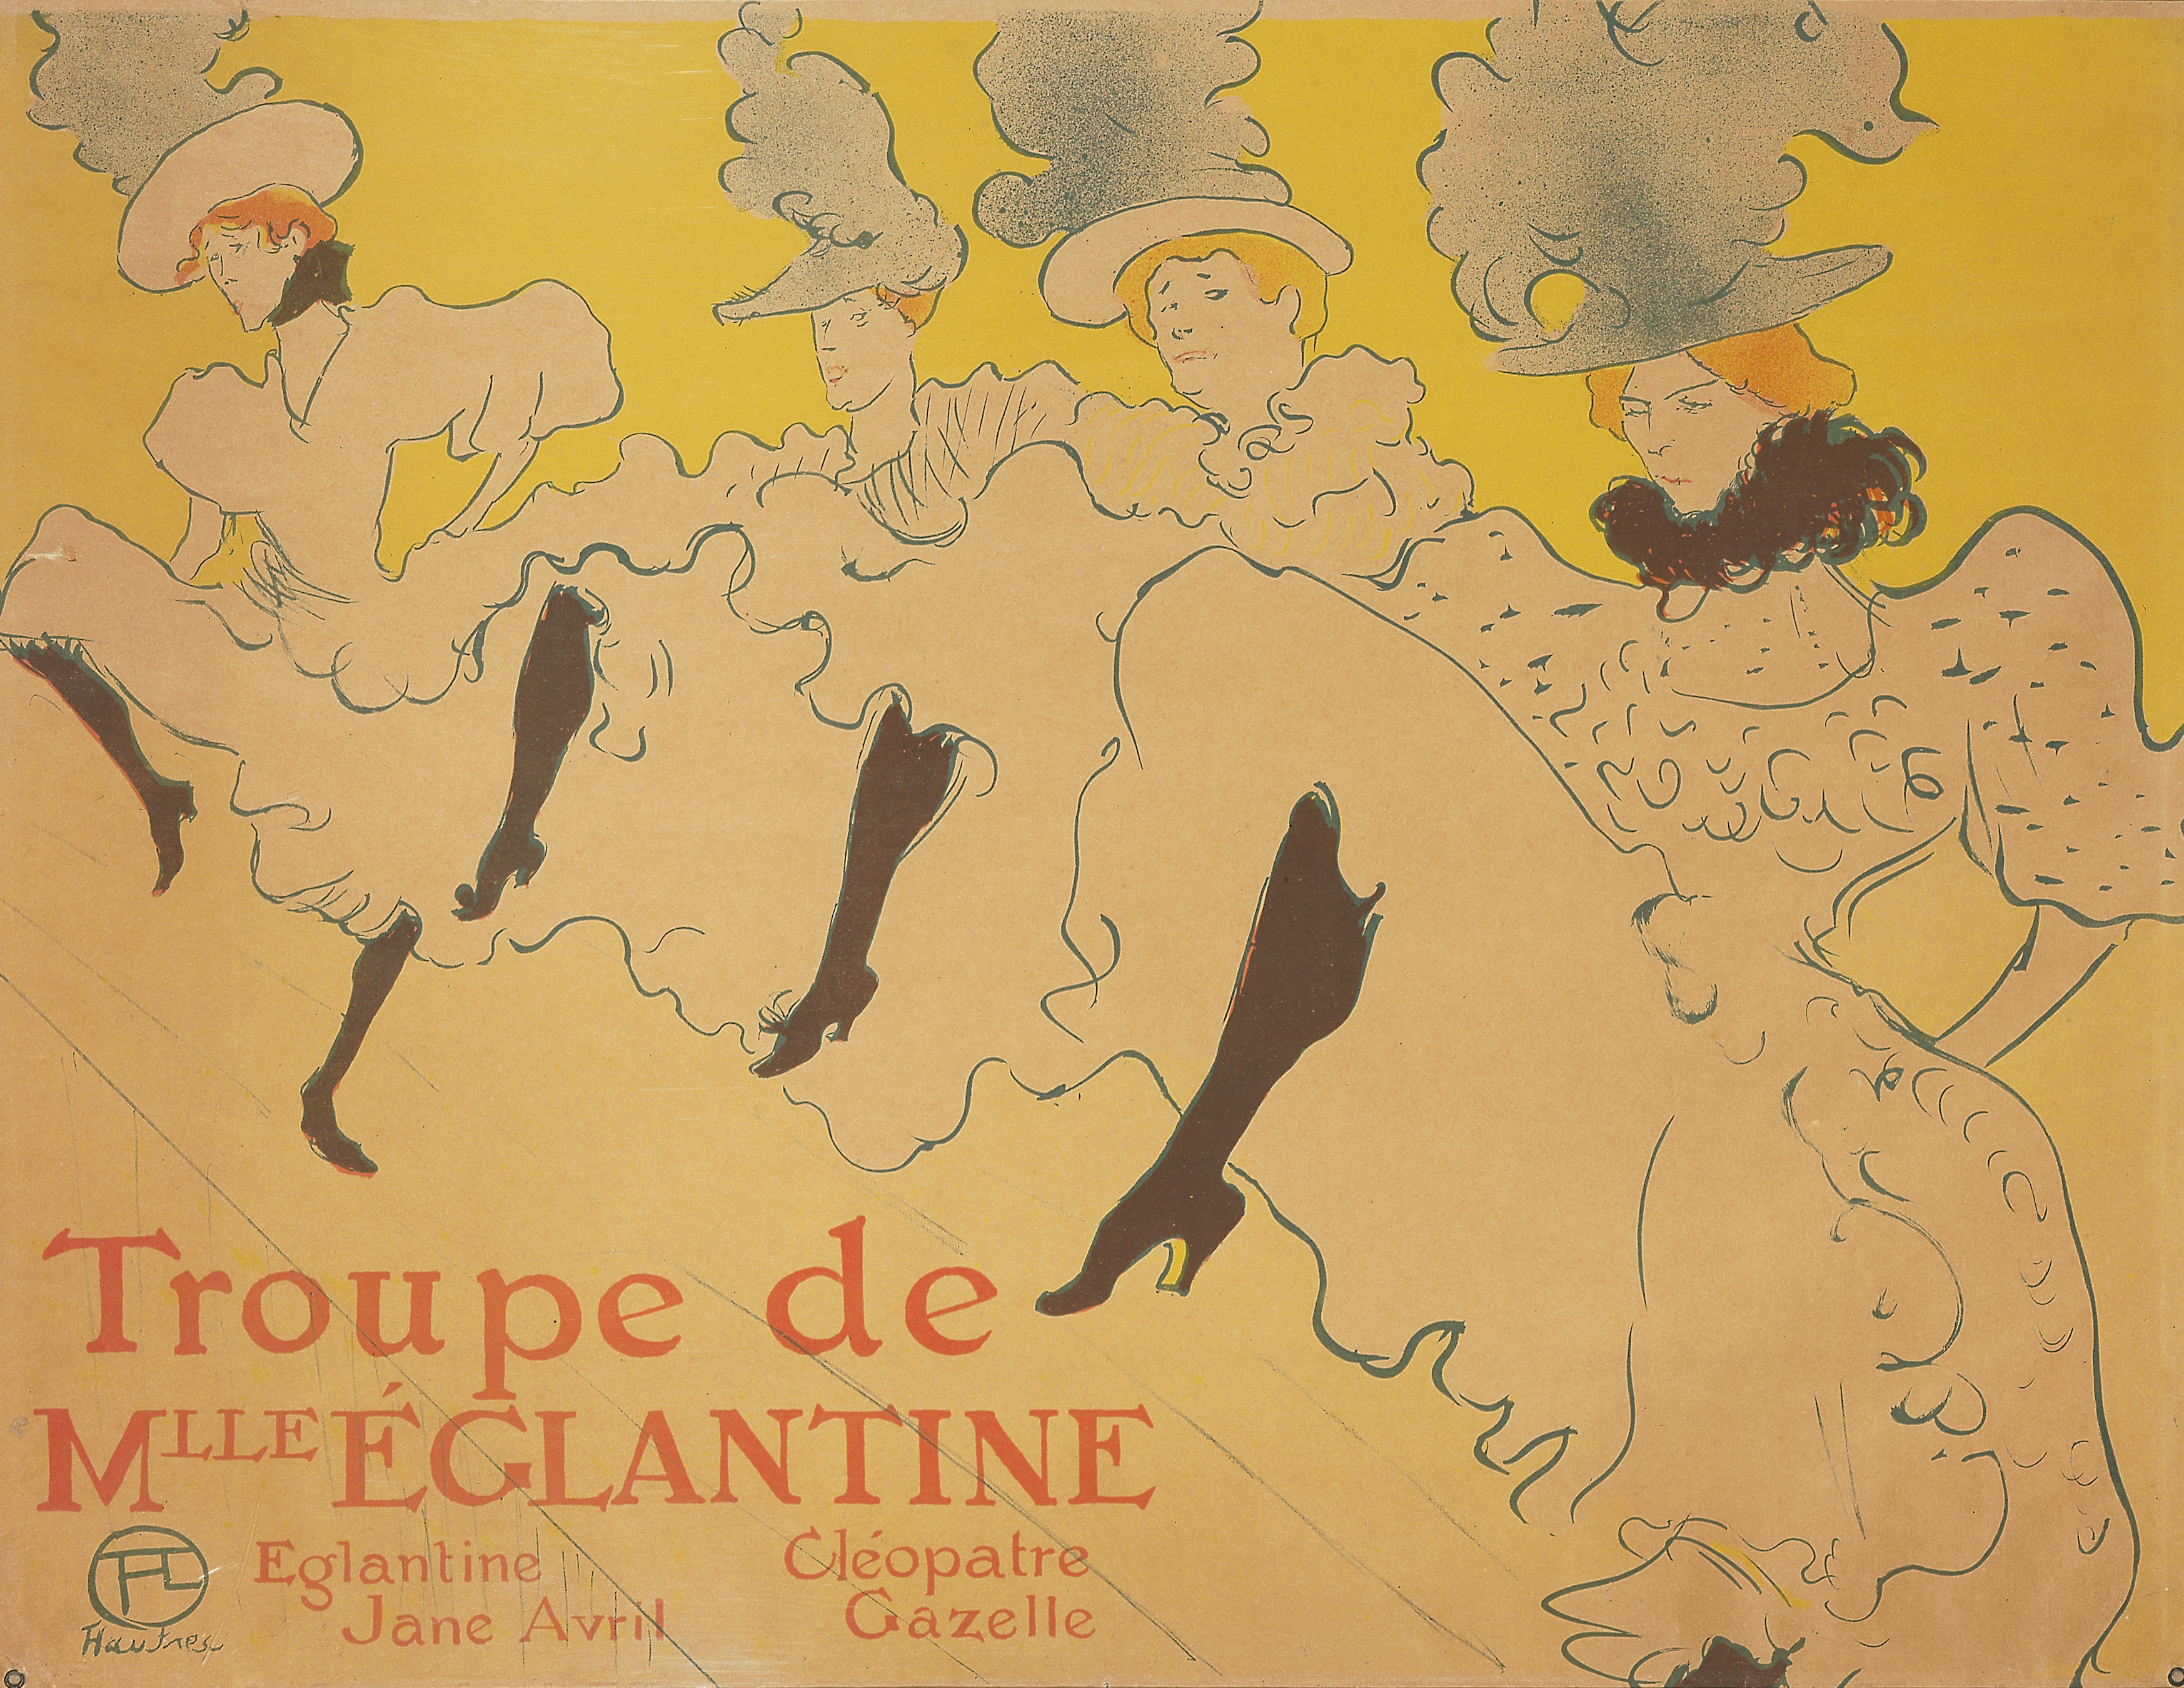 Toulouse-Lautrec, La troupe de Mlle Eglantine, 1896. Image showing four cancan dancers with yellow background.